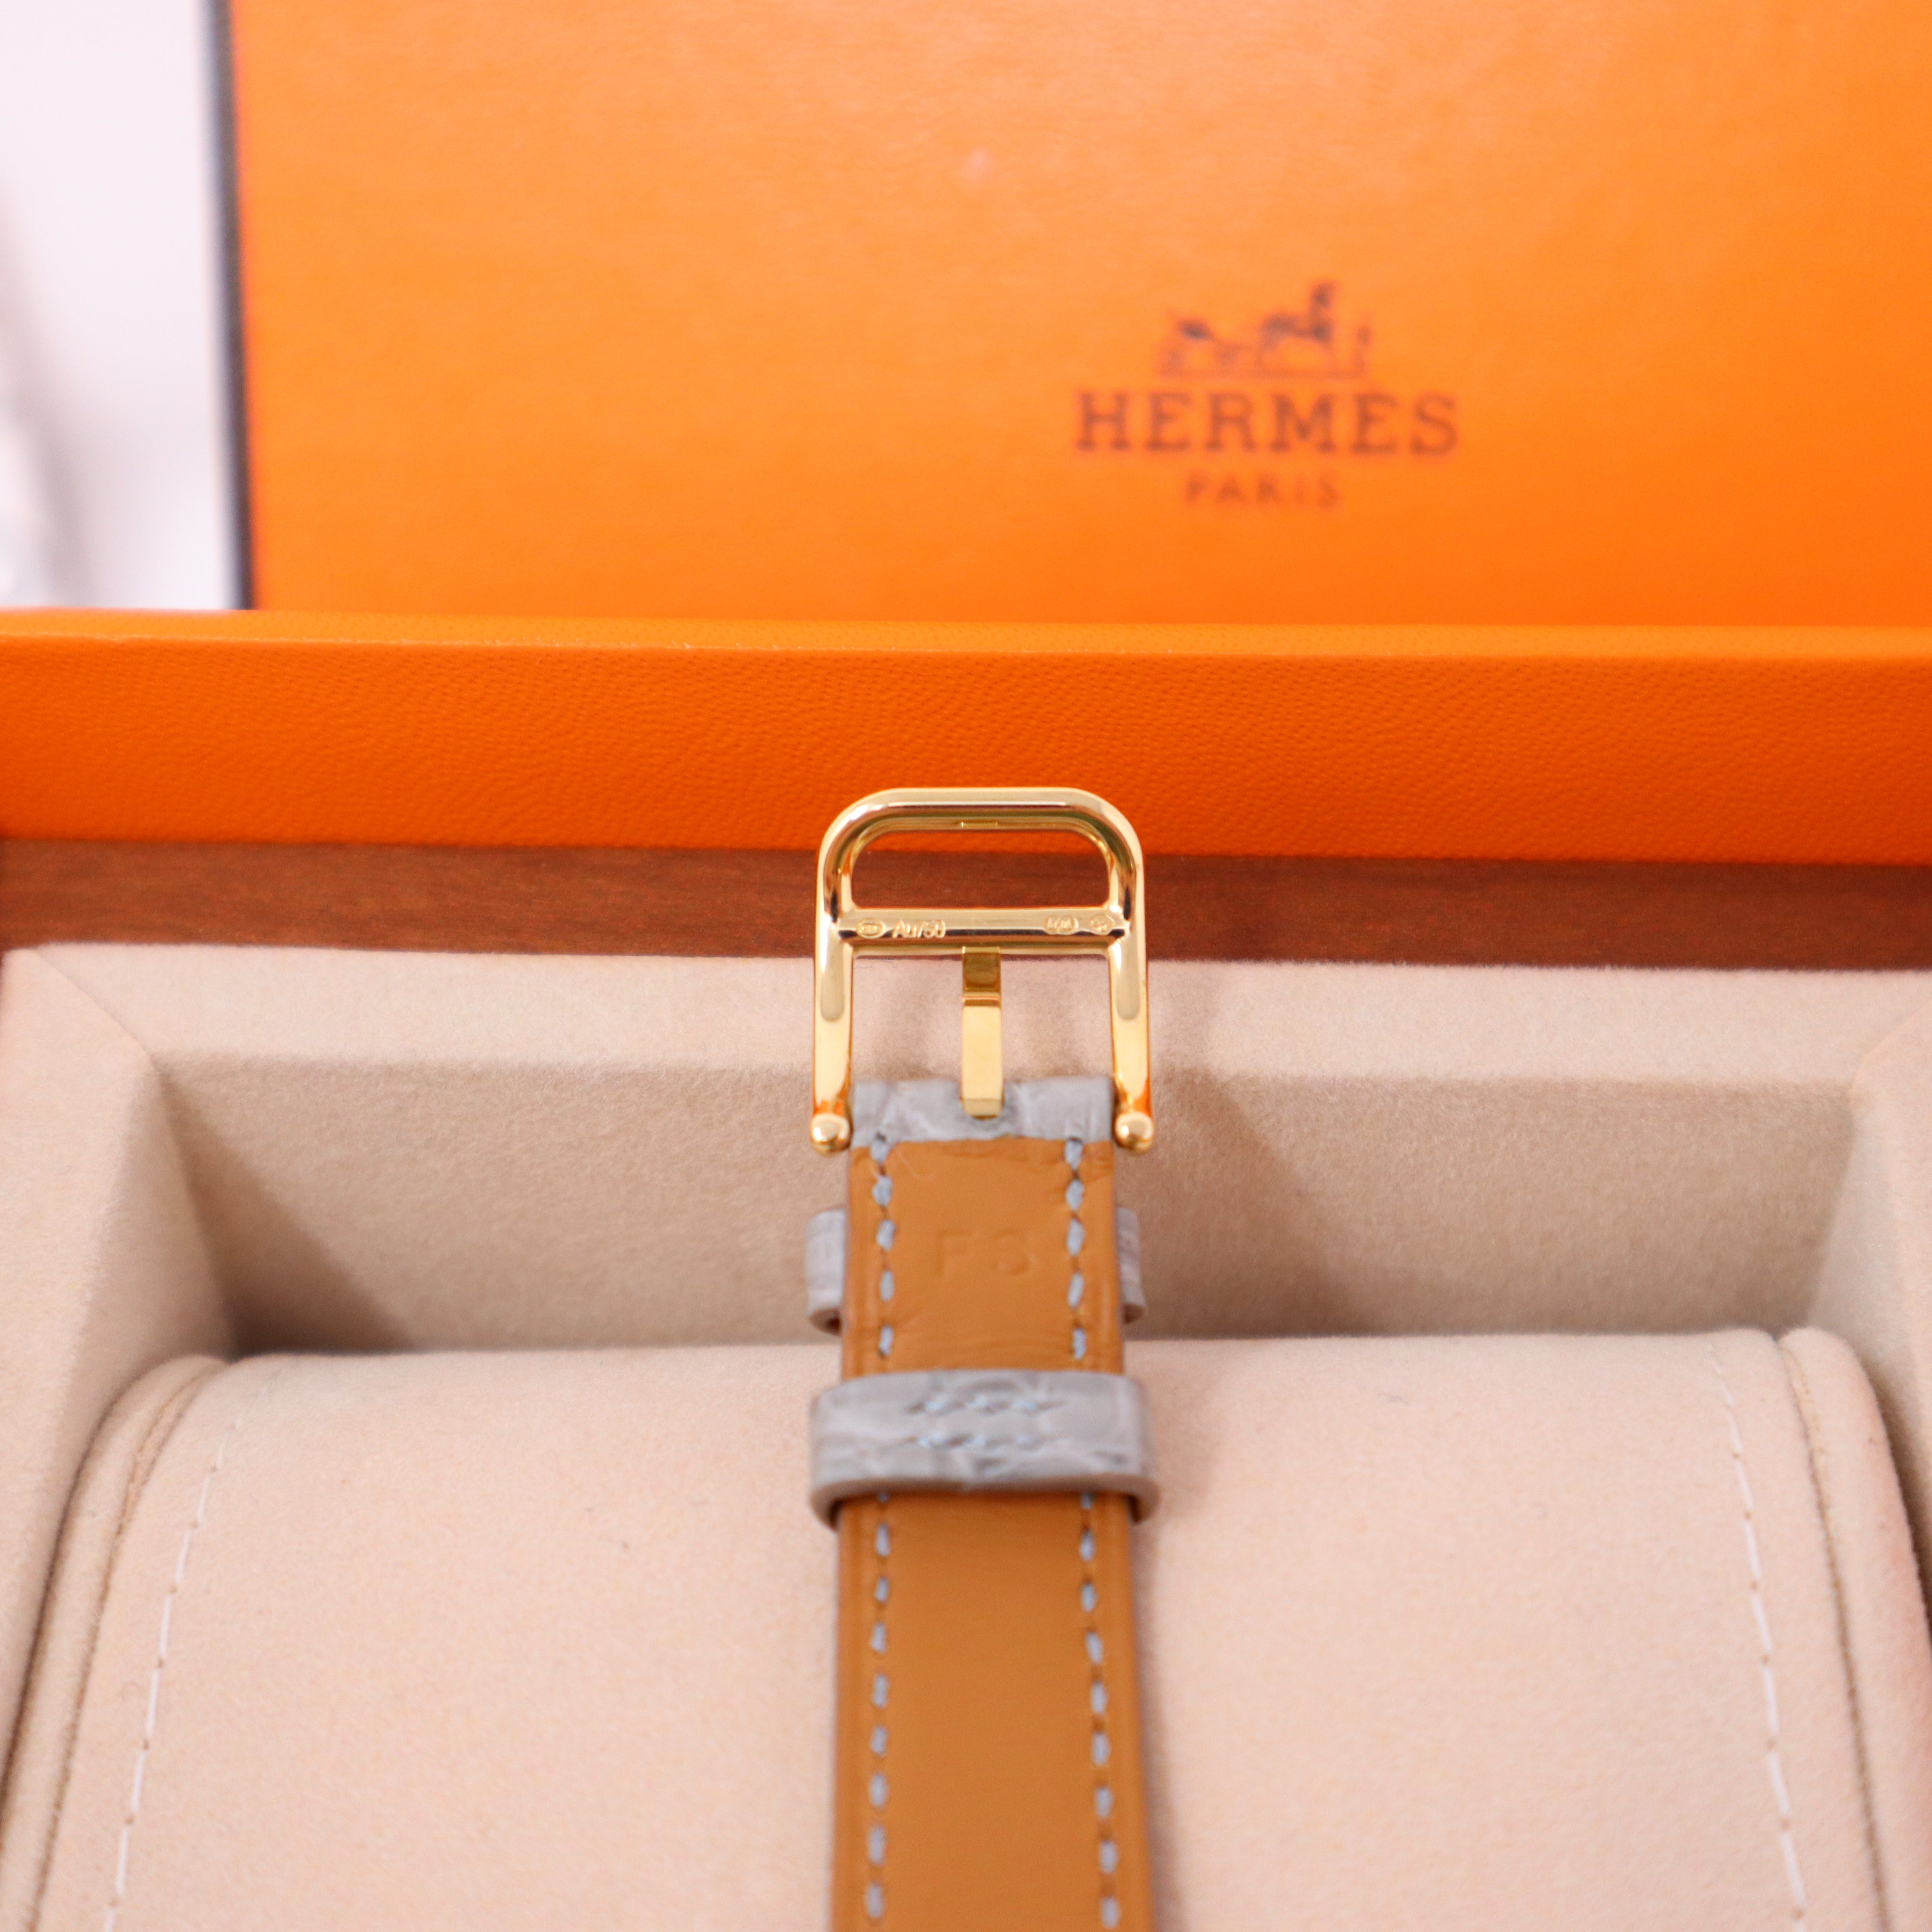 Hermès 'Cape Cod' Diamond Watch in 18K Rose Gold, 29 #515308